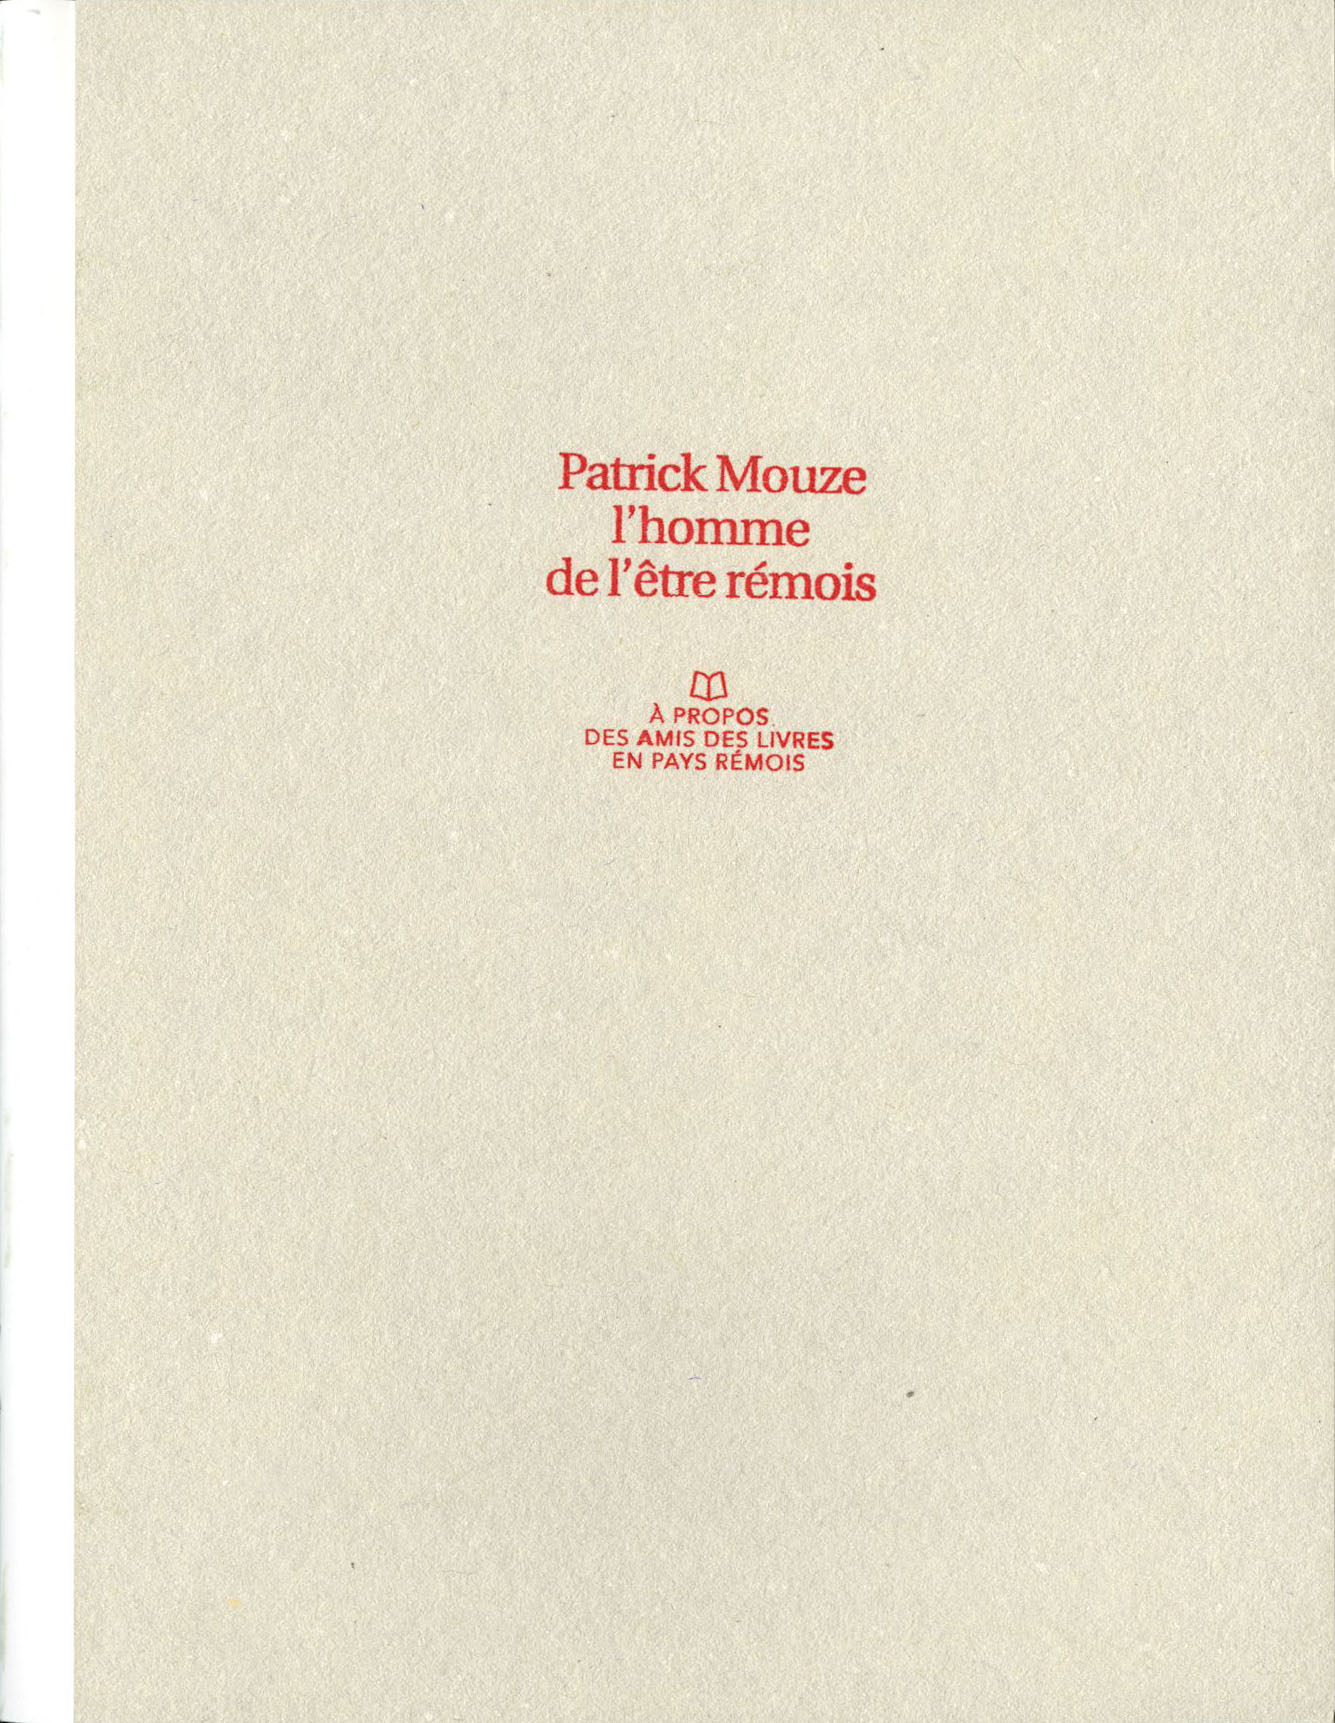 Patrick Mouze